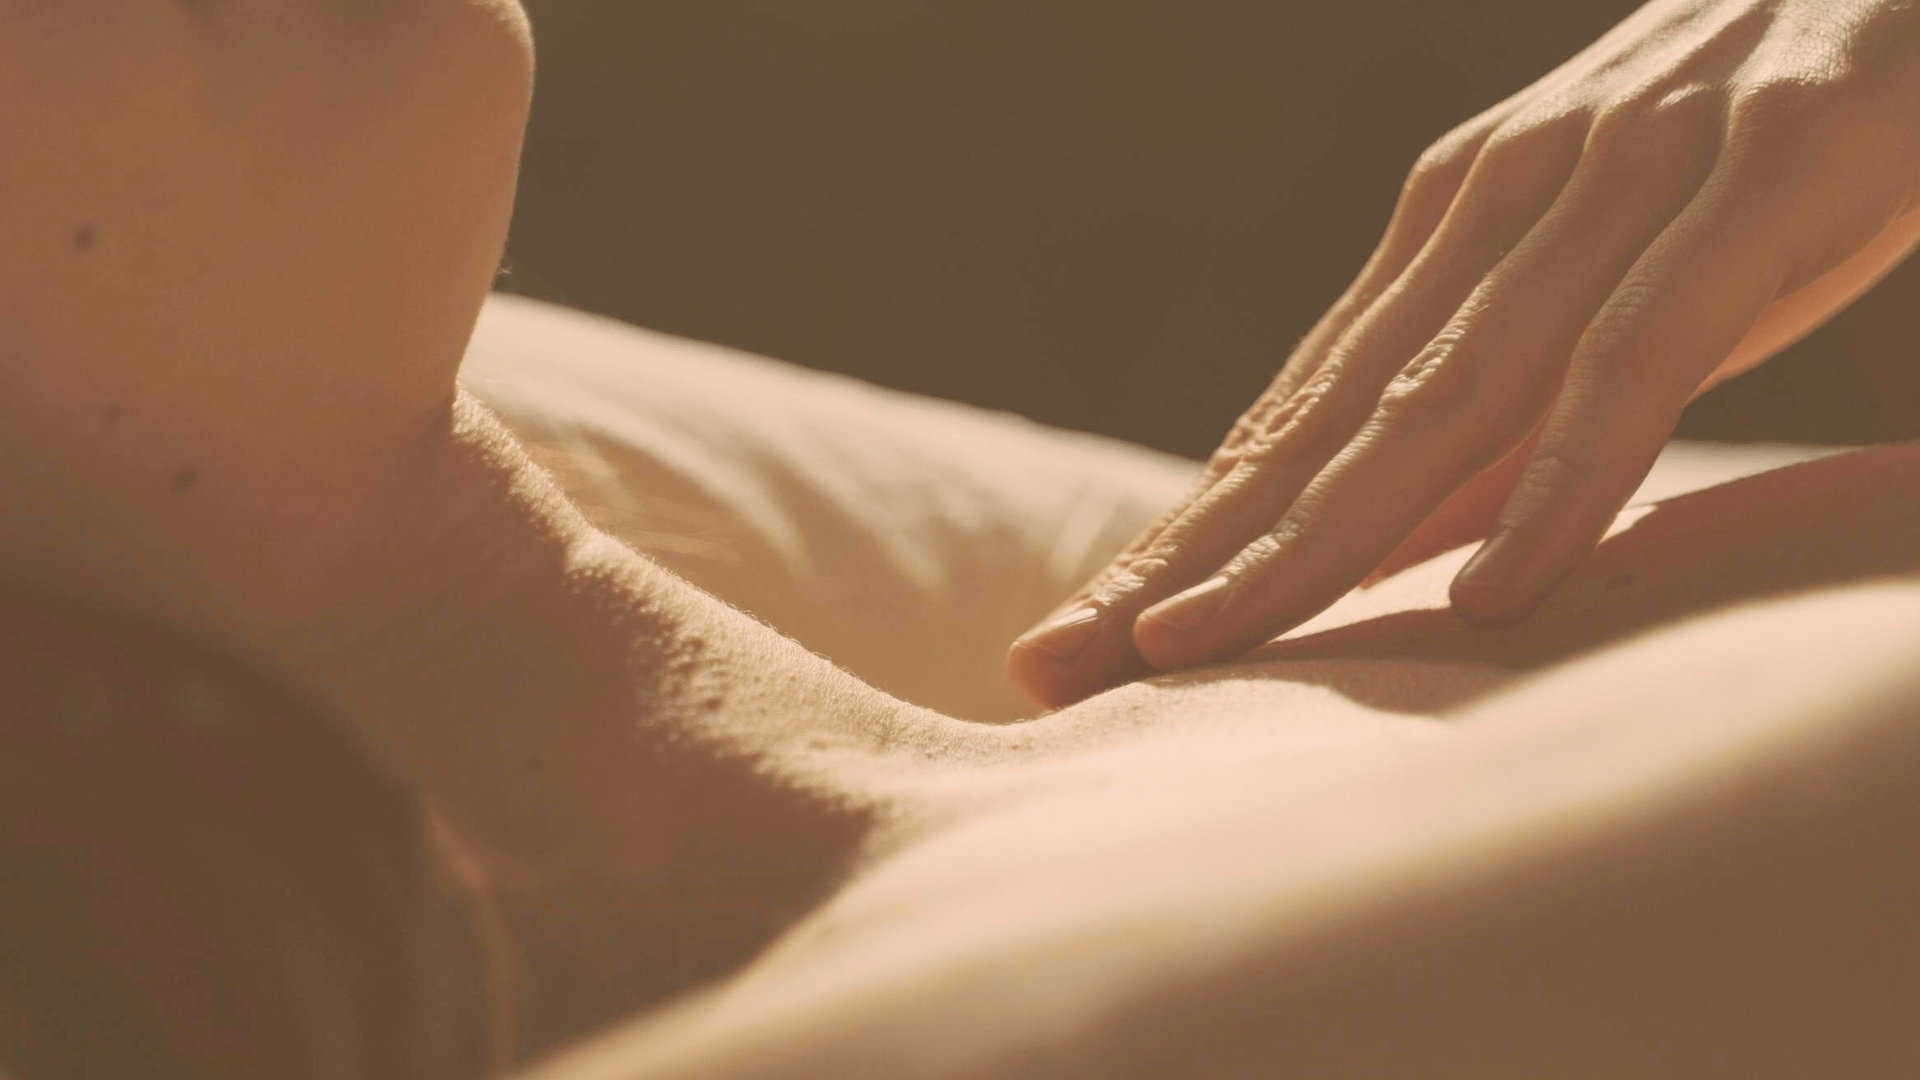 Le désir sexuel : comment l'exprimer ?